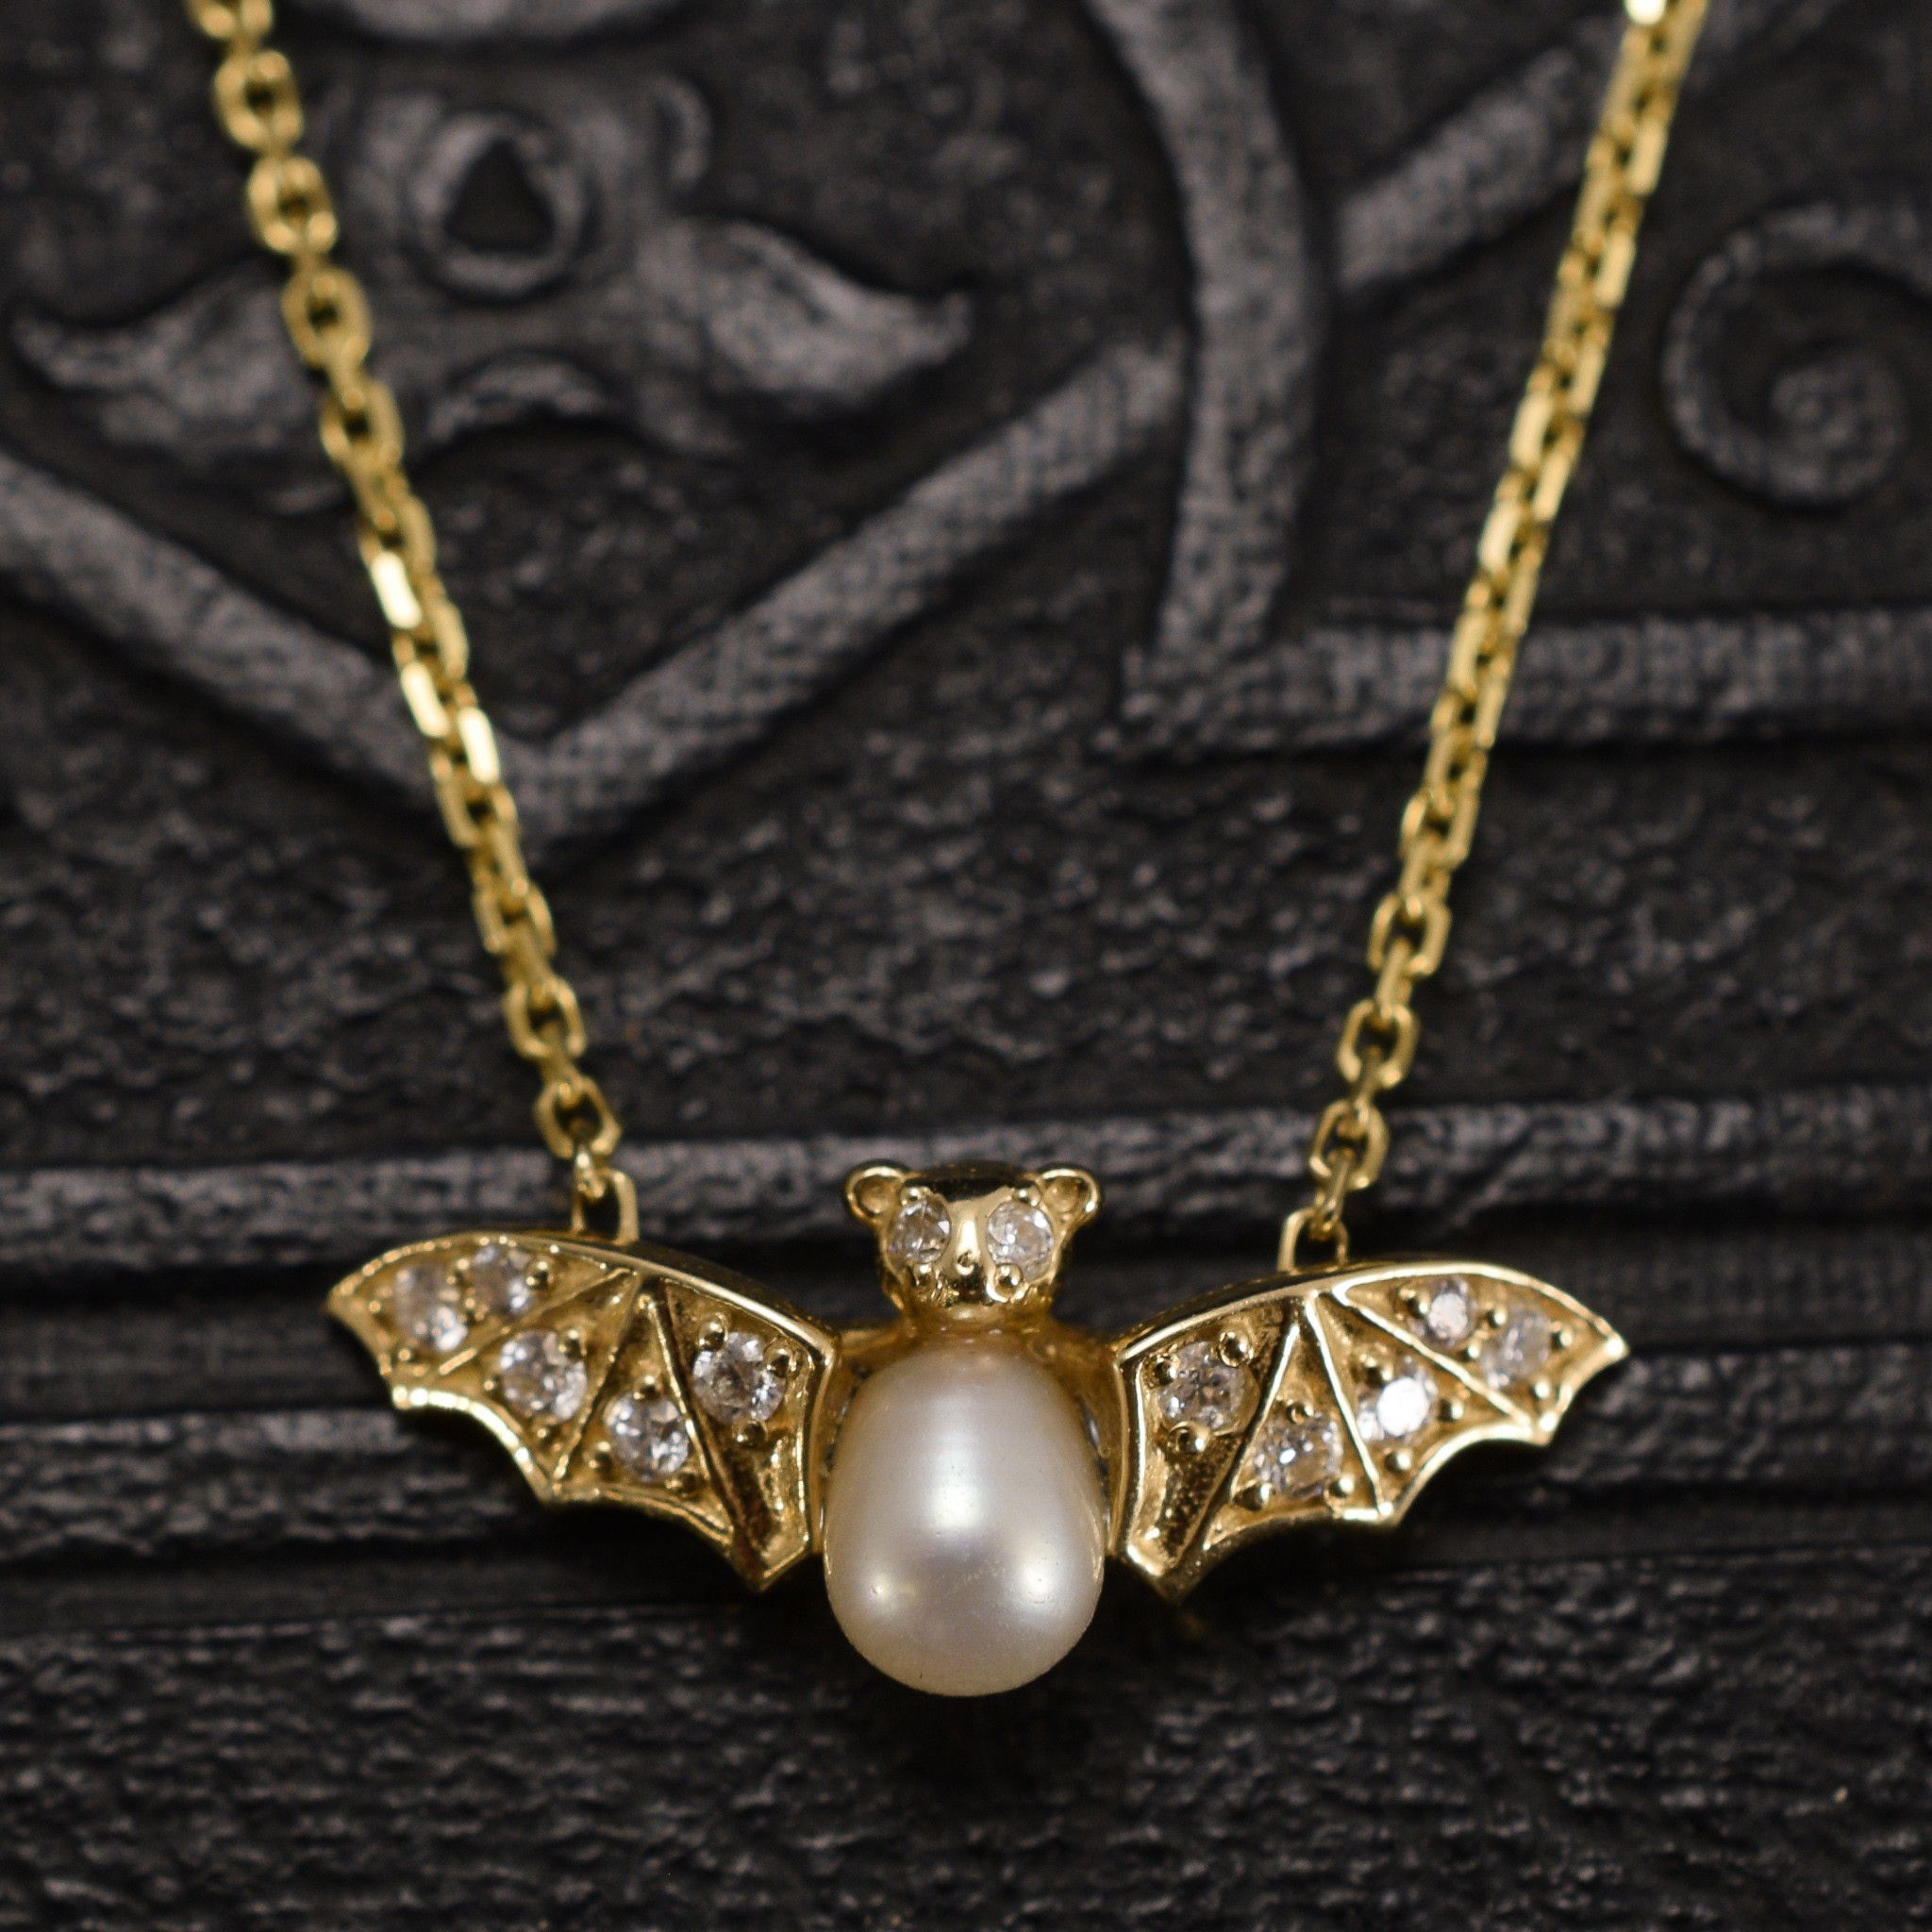 jeweled bat necklace